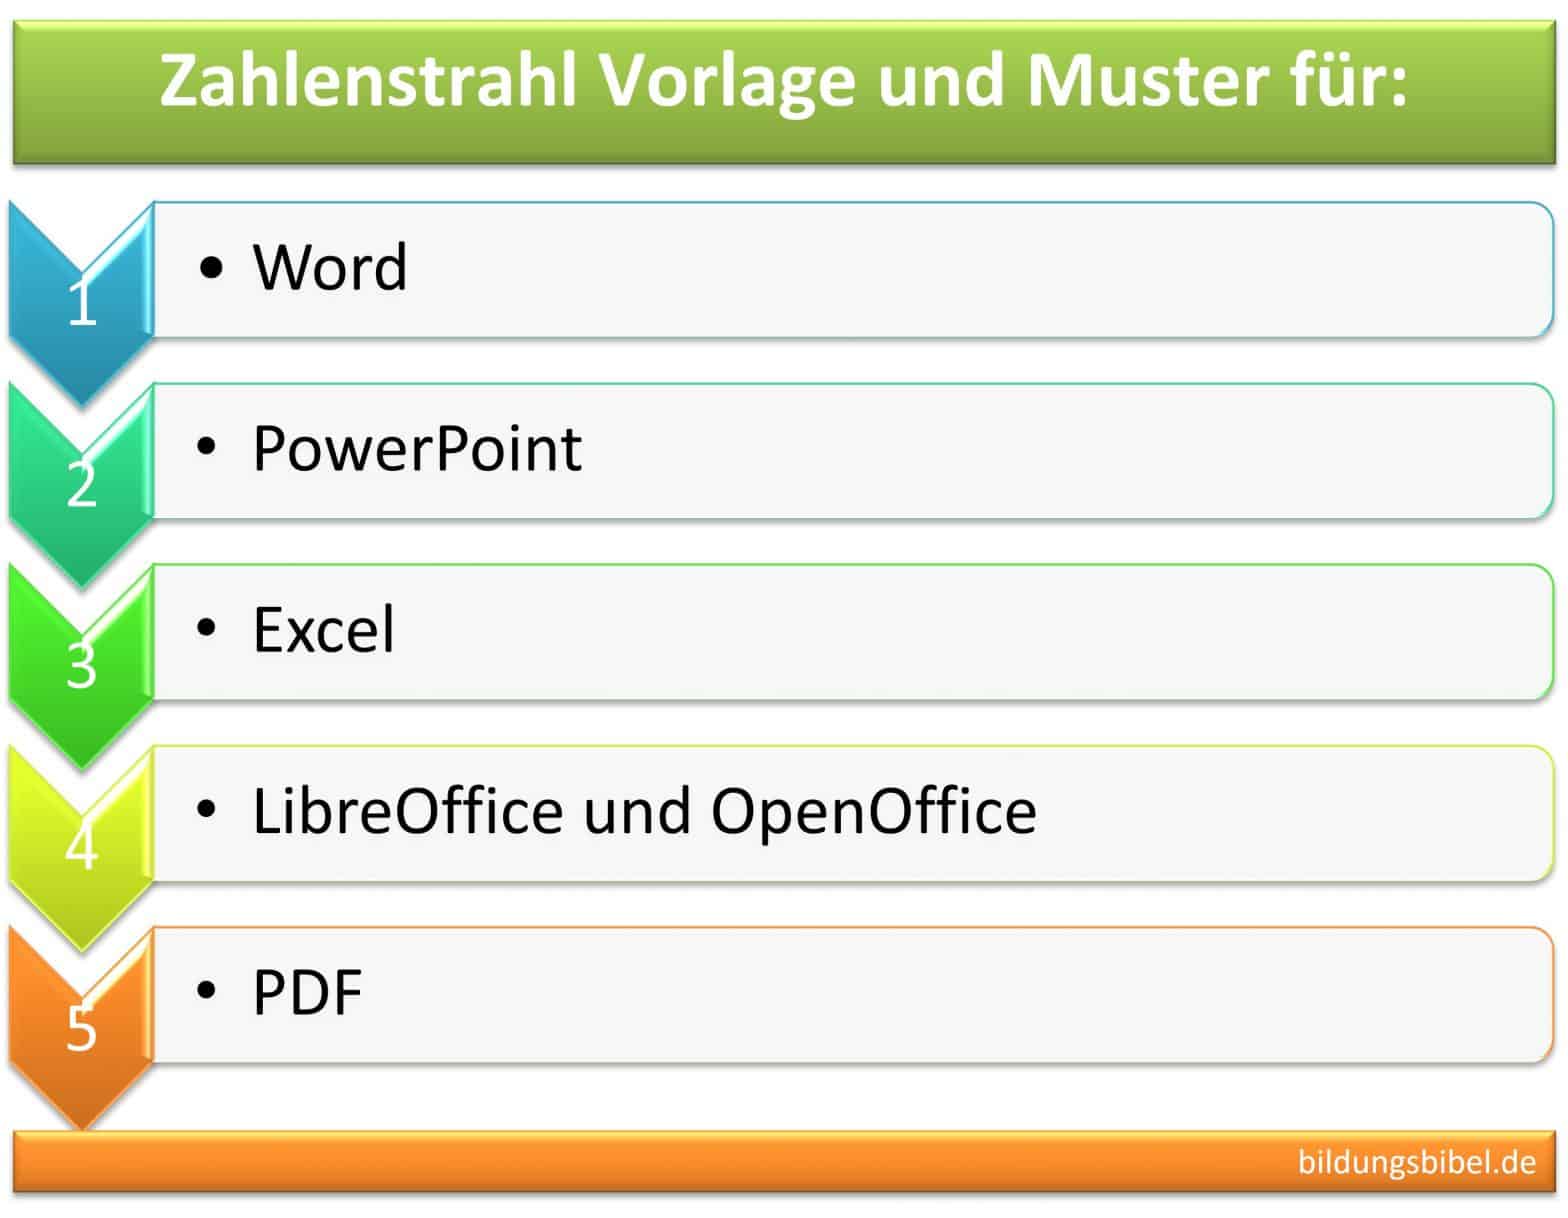 Zahlenstrahl Vorlage, Muster im Hochformat, Querformat zum Ausdrucken, Word, Excel, PowerPoint, LibreOffice, OpenOffice und PDF kostenlos.